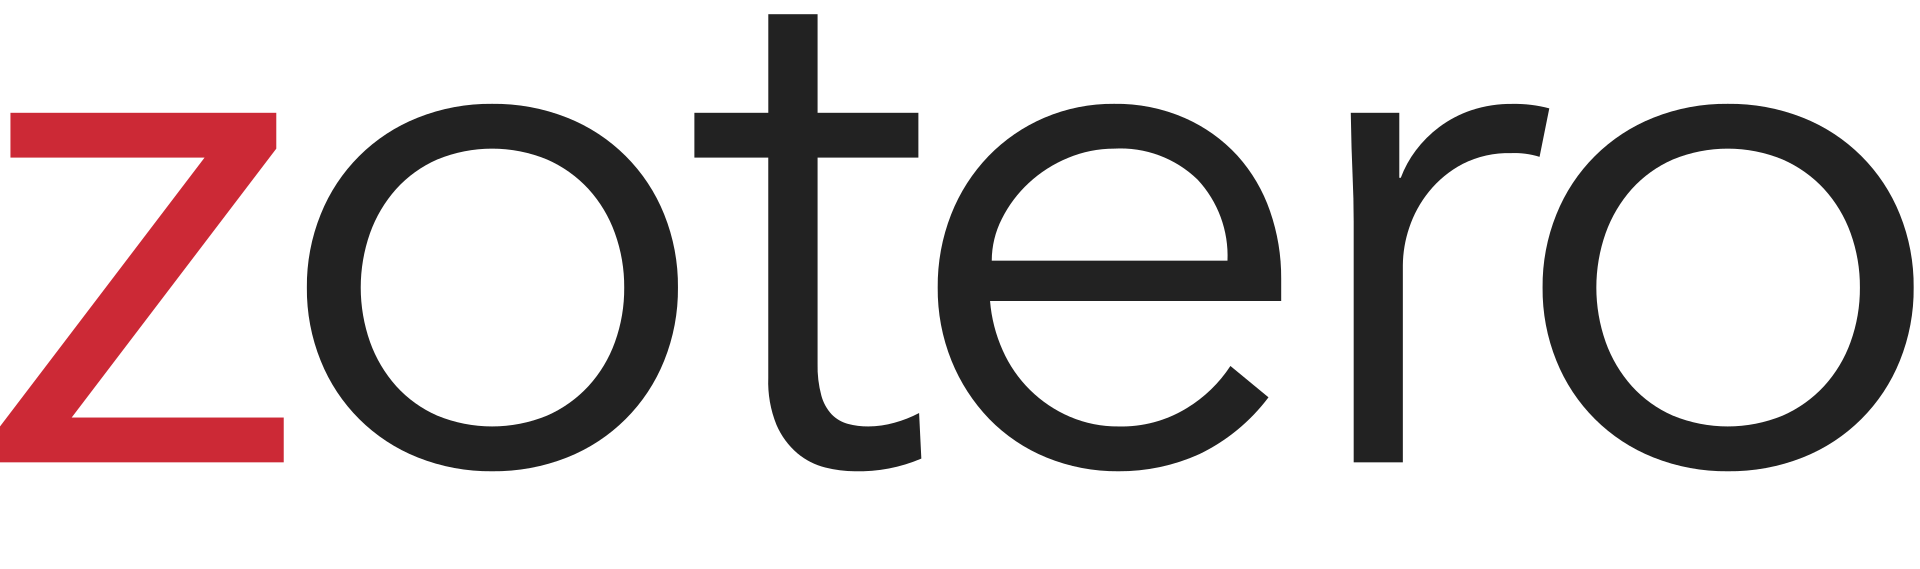 The Zotero Logo